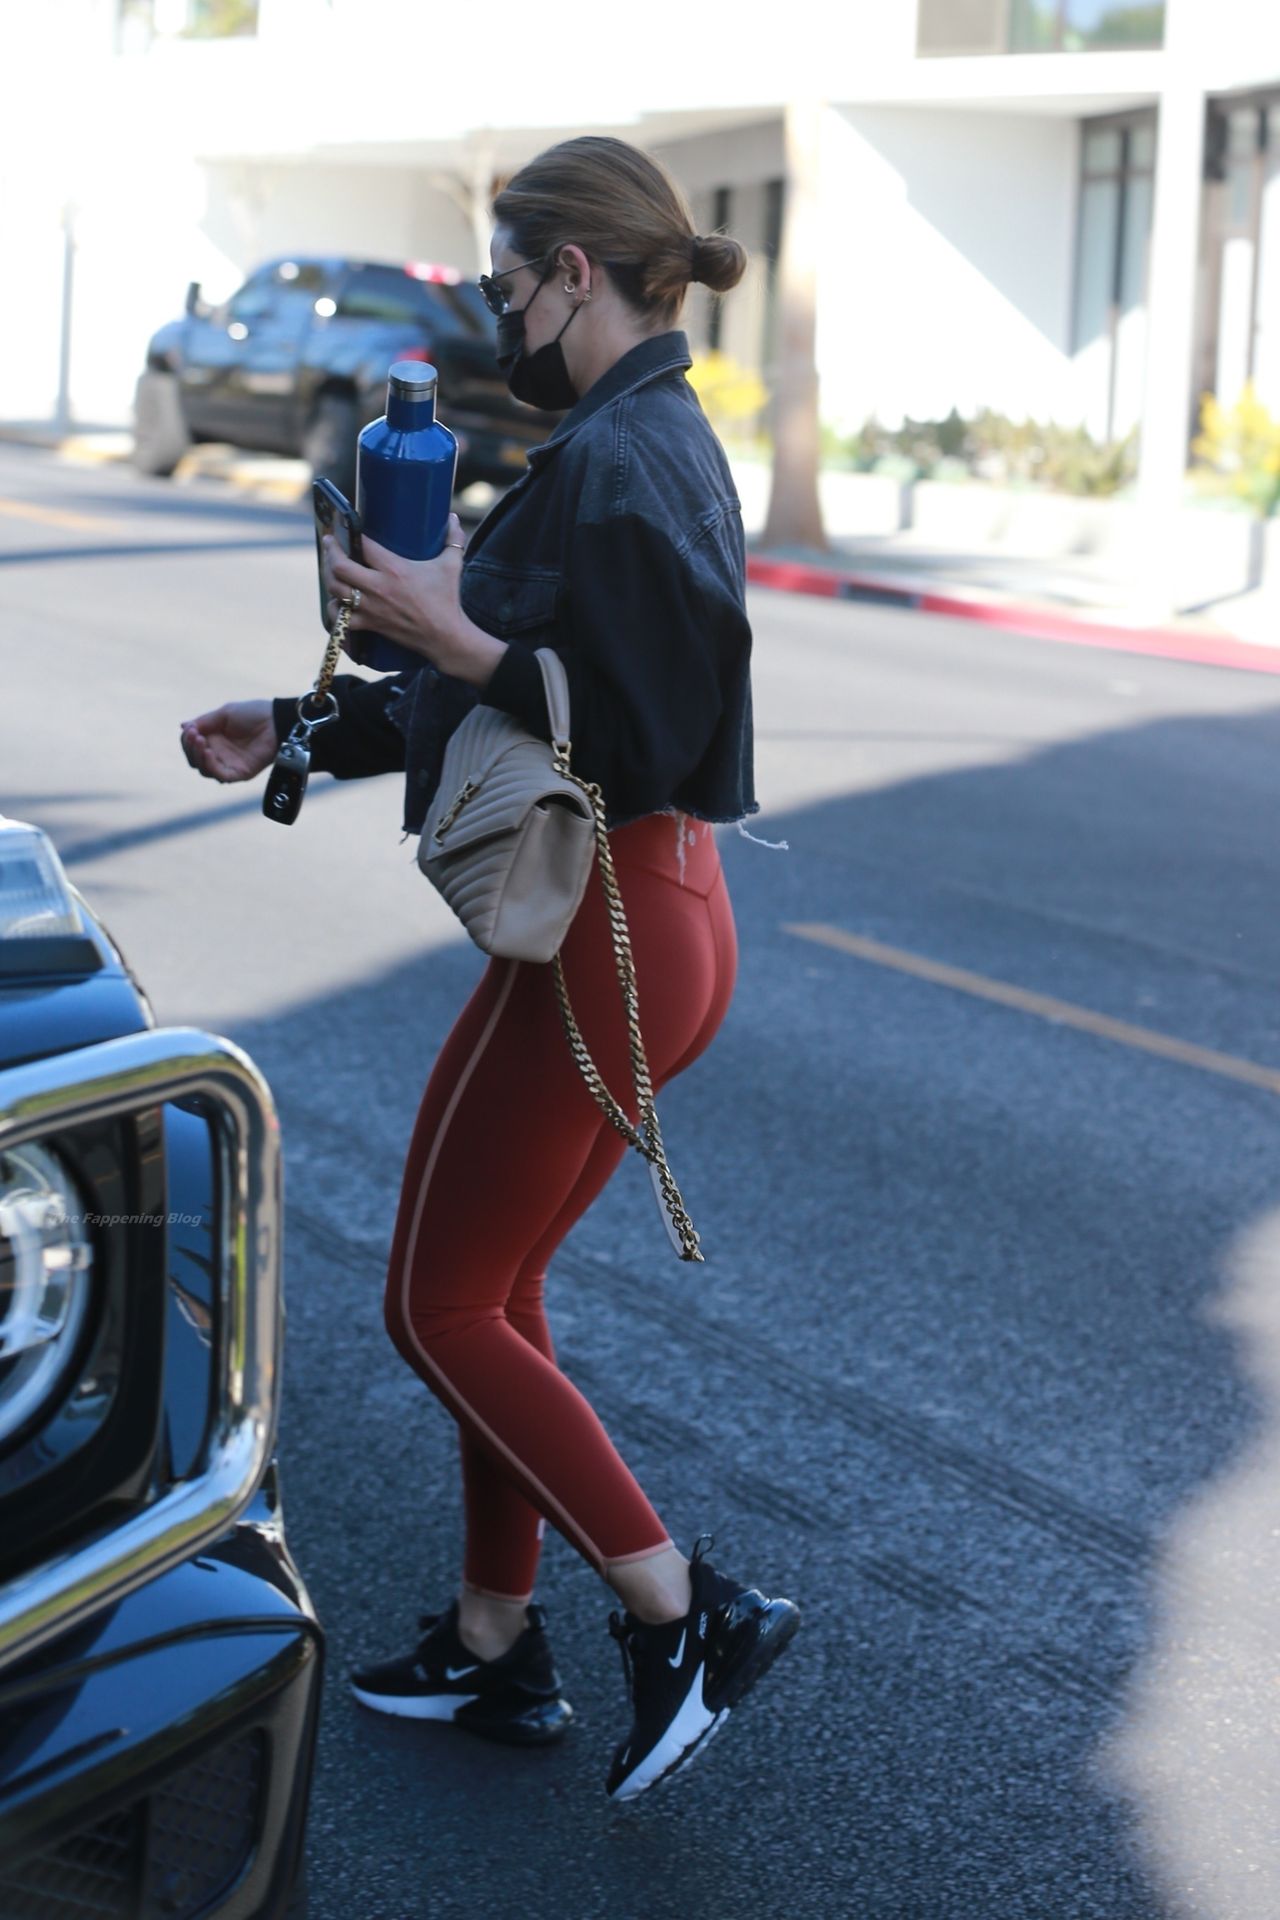 Lucy Hale Visits the Le Jolie Medi Spa in LA (19 Photos)